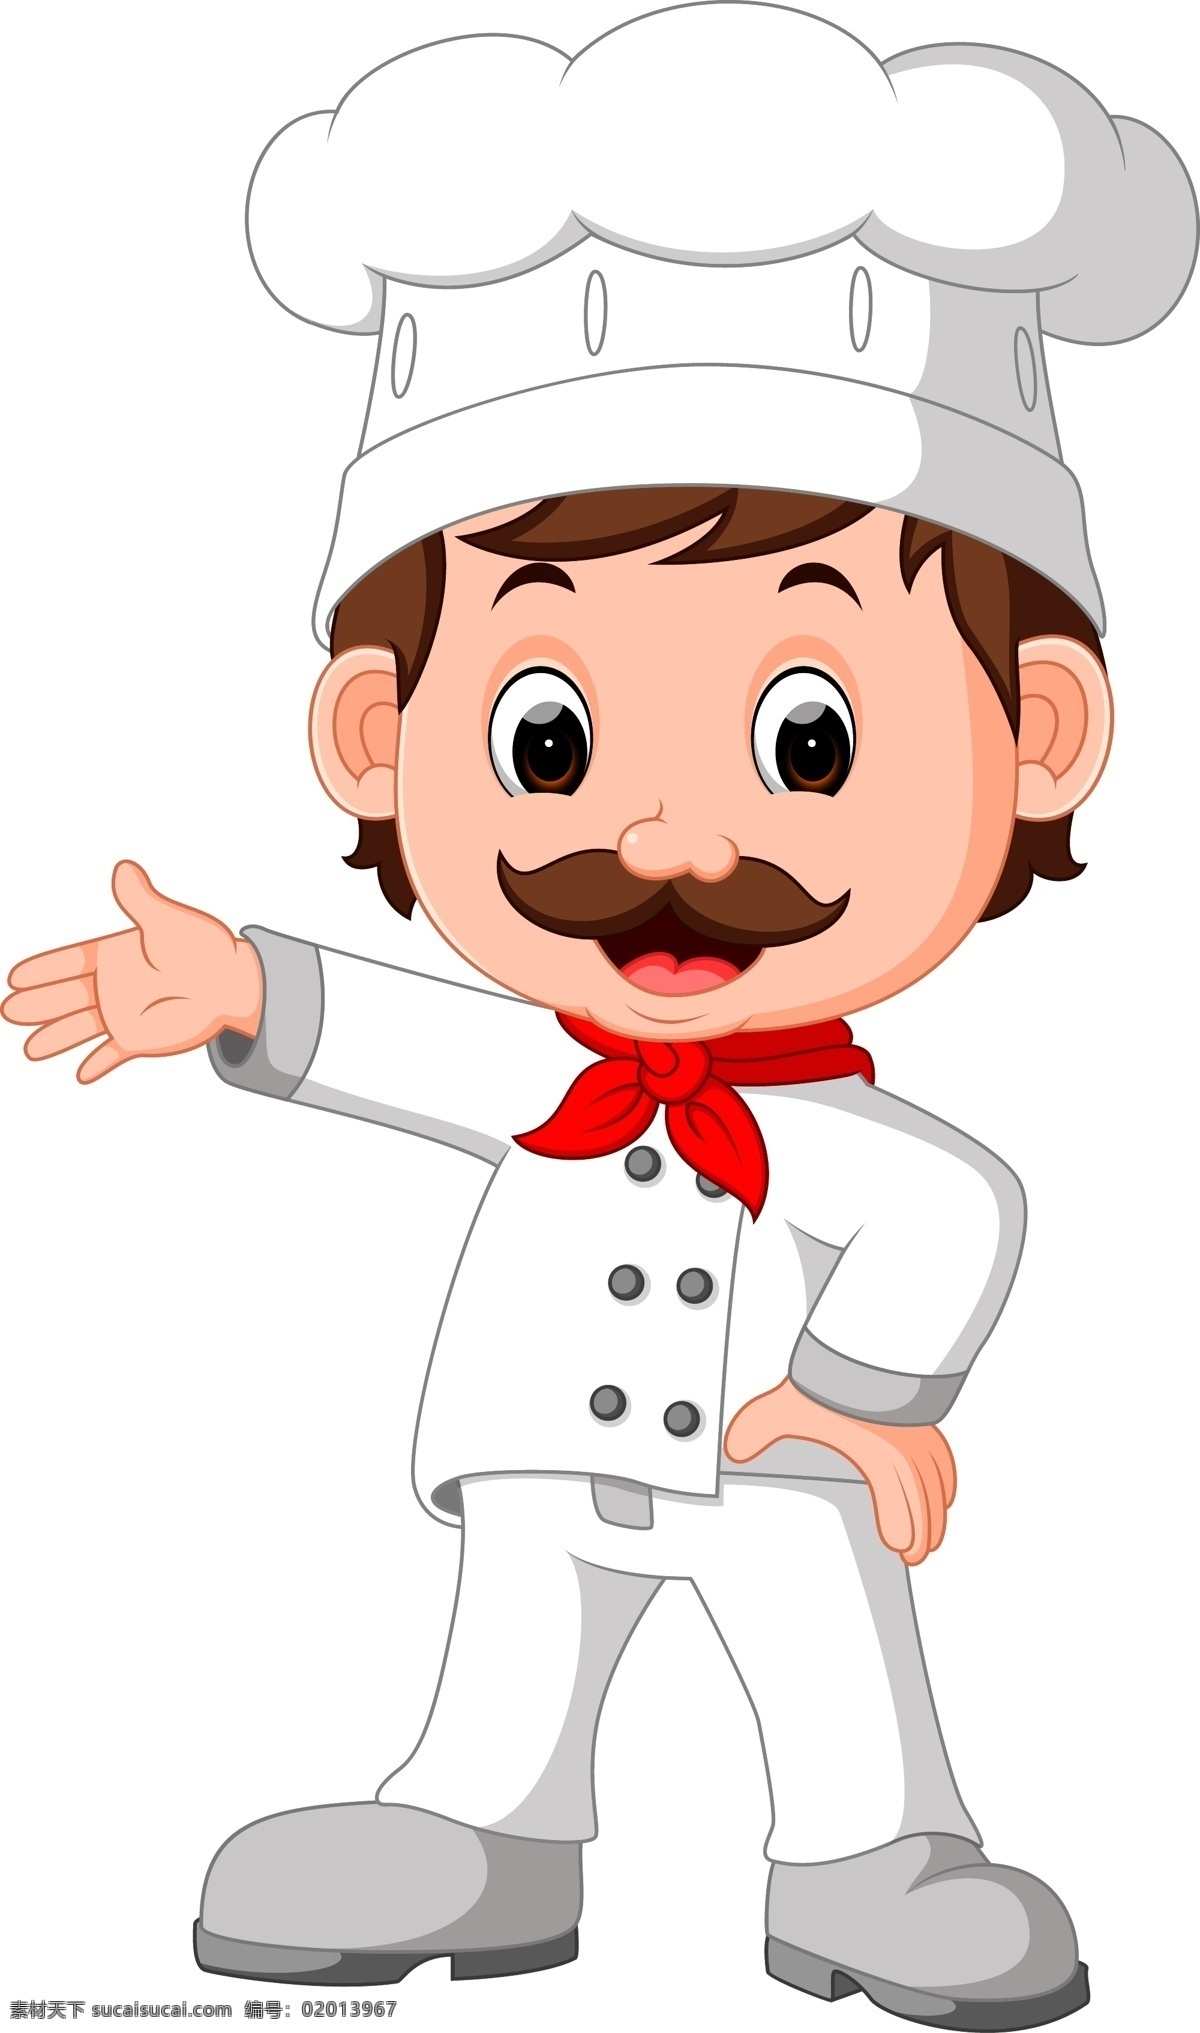 手 叉腰 的卡 通 厨师 矢量 卡通厨师 小厨师 厨师帽 可爱儿童 手叉腰 小胡子 卡通人物 动漫动画 动漫人物